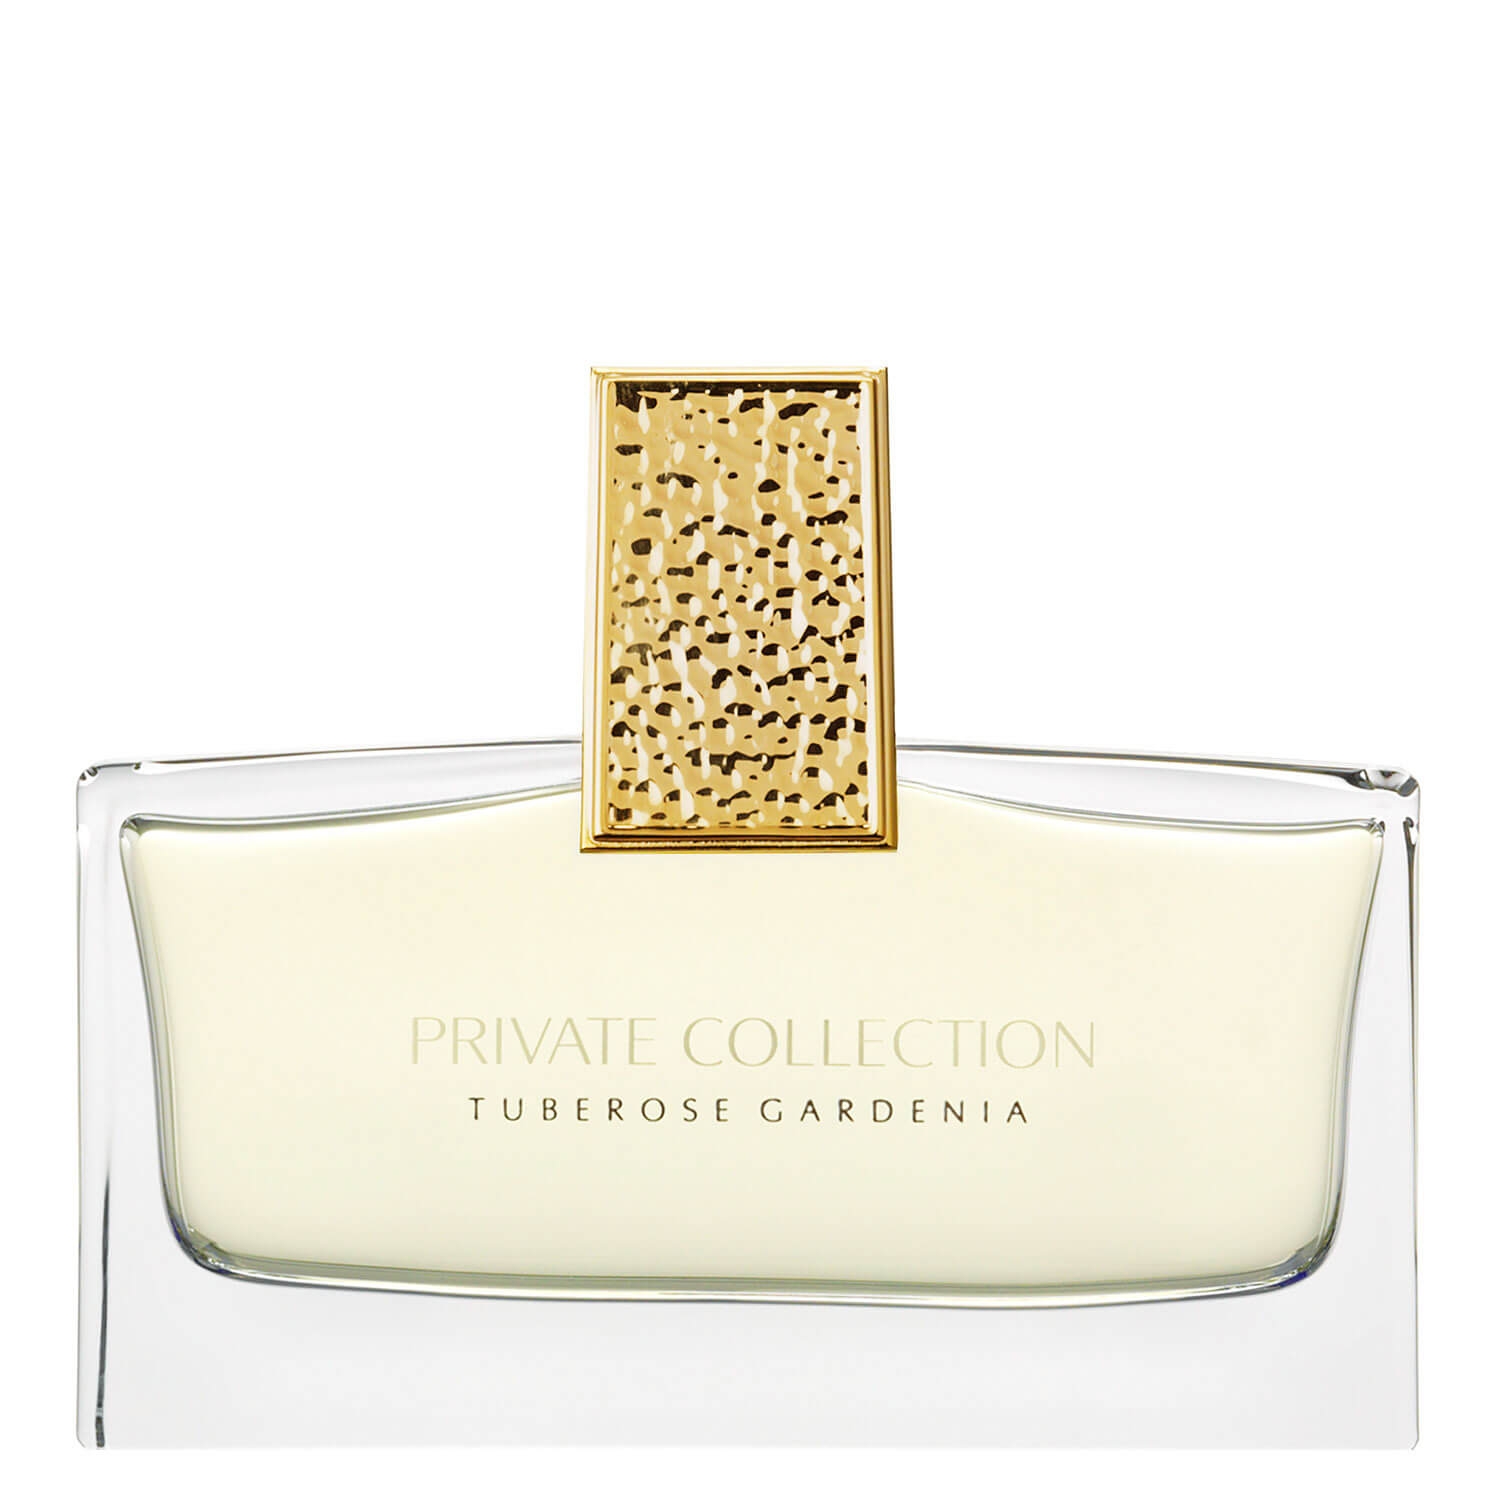 Produktbild von Private Collection - Tuberose Gardenia Eau de Parfum Spray